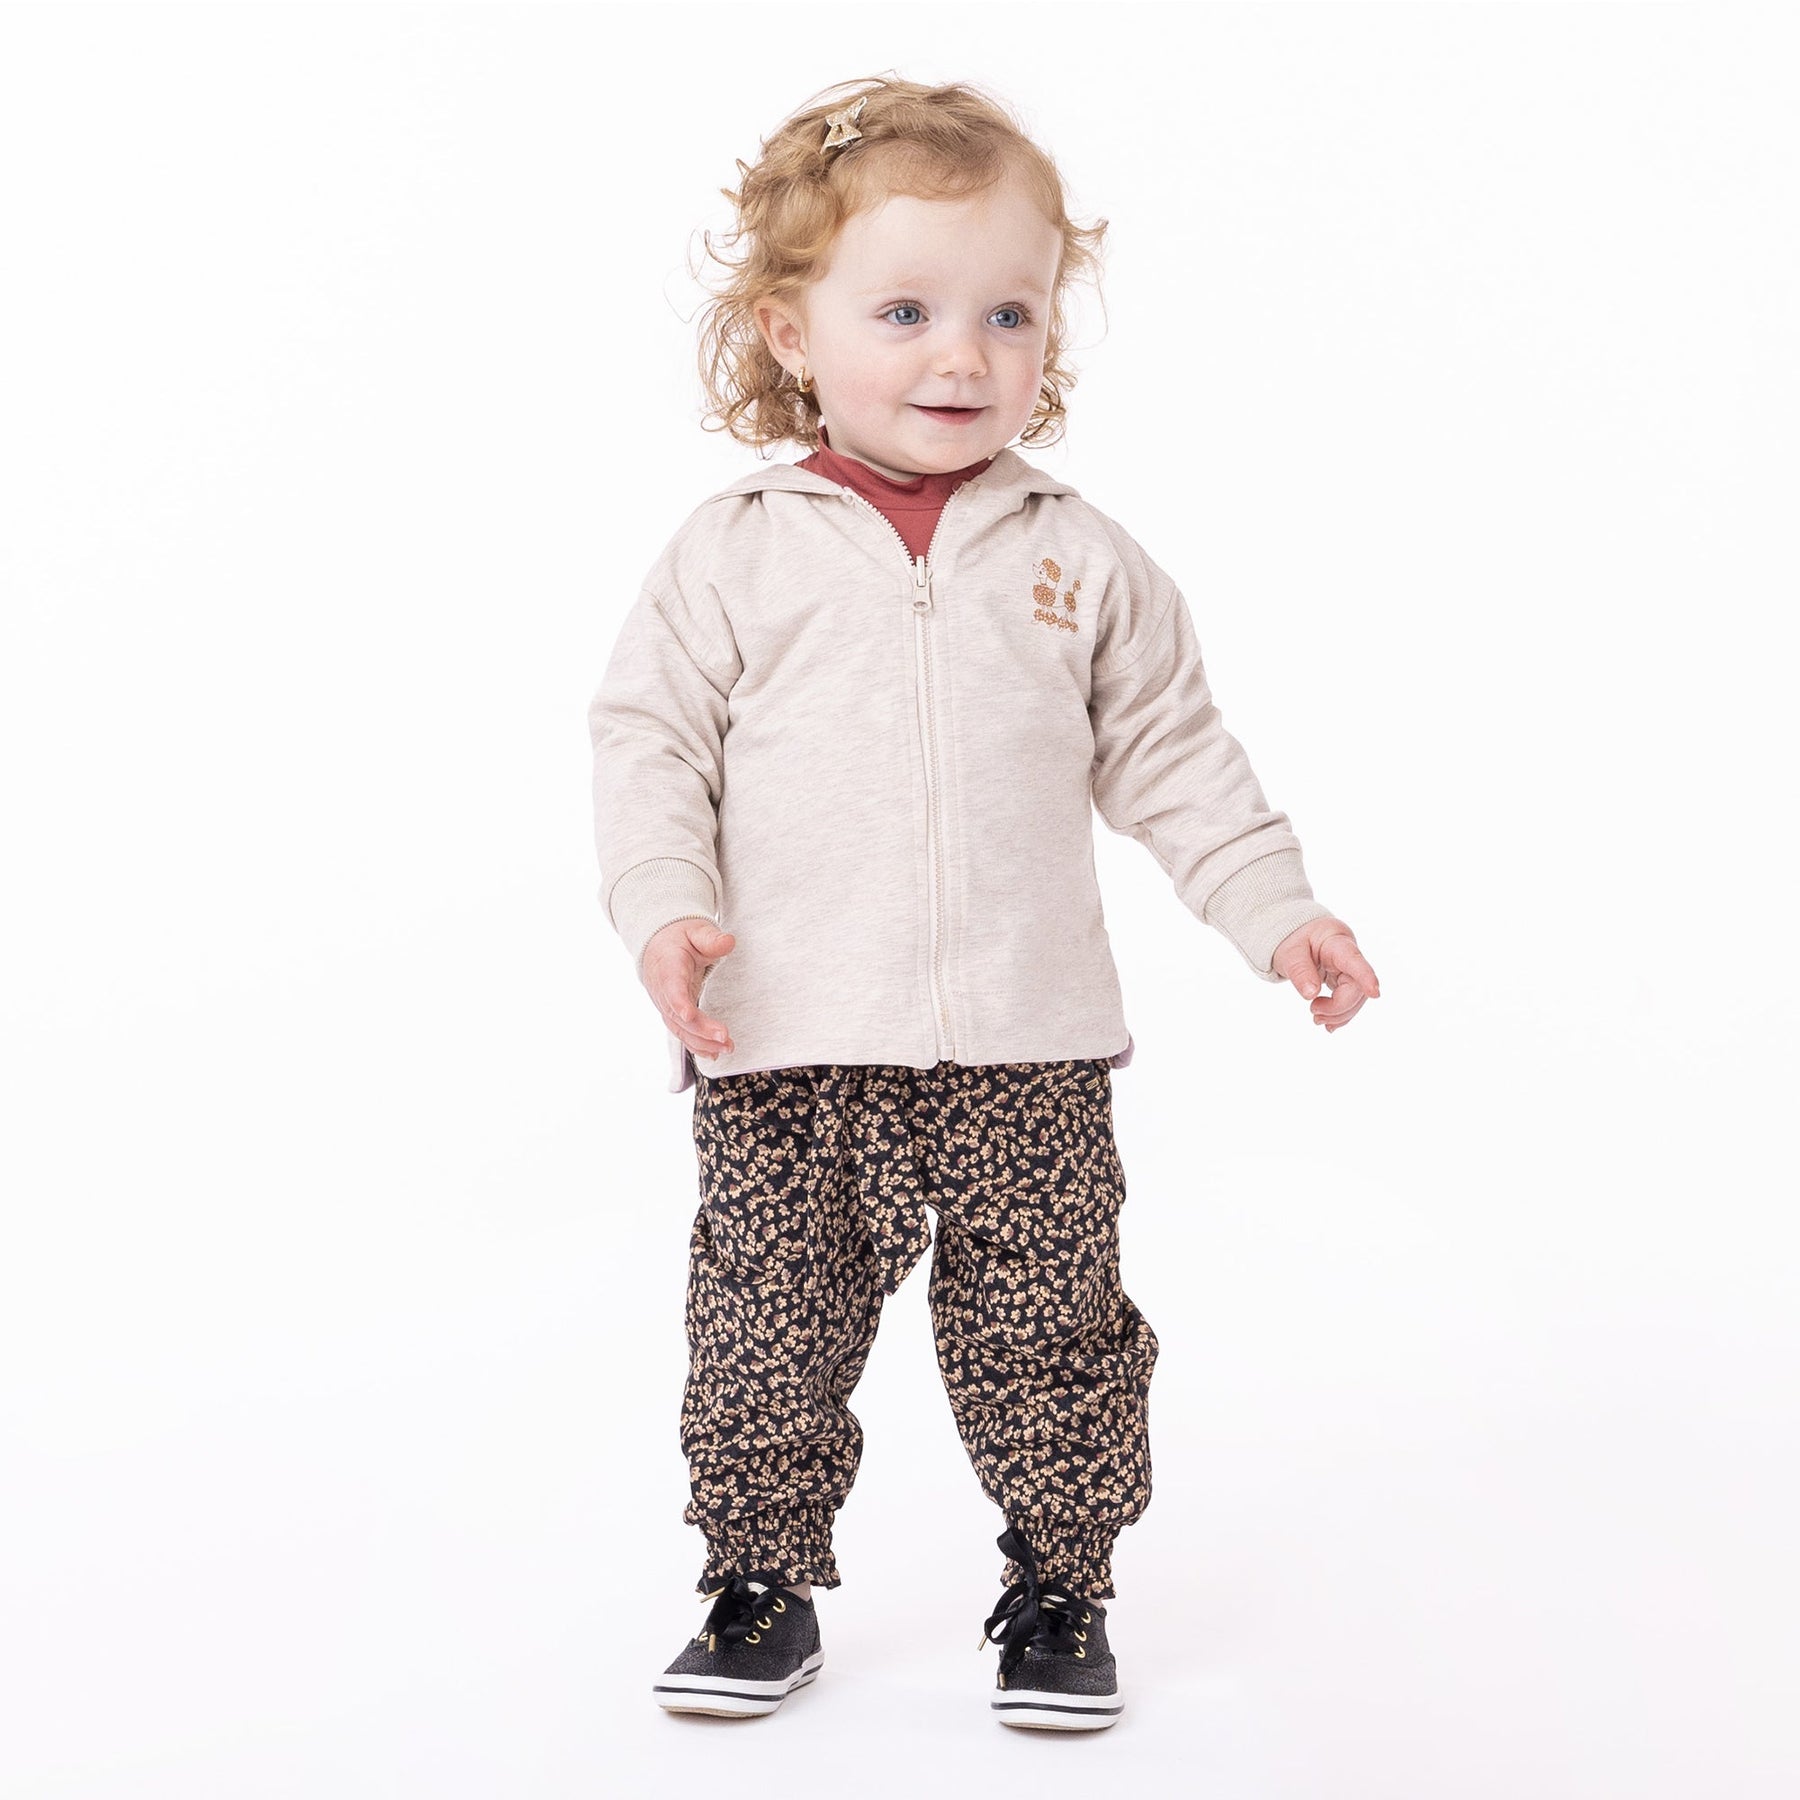 Veste réversible à capuchon pour bébé fille par Nanö | F2352-08 Beige chiné | Boutique Flos, vêtements mode pour bébés et enfants